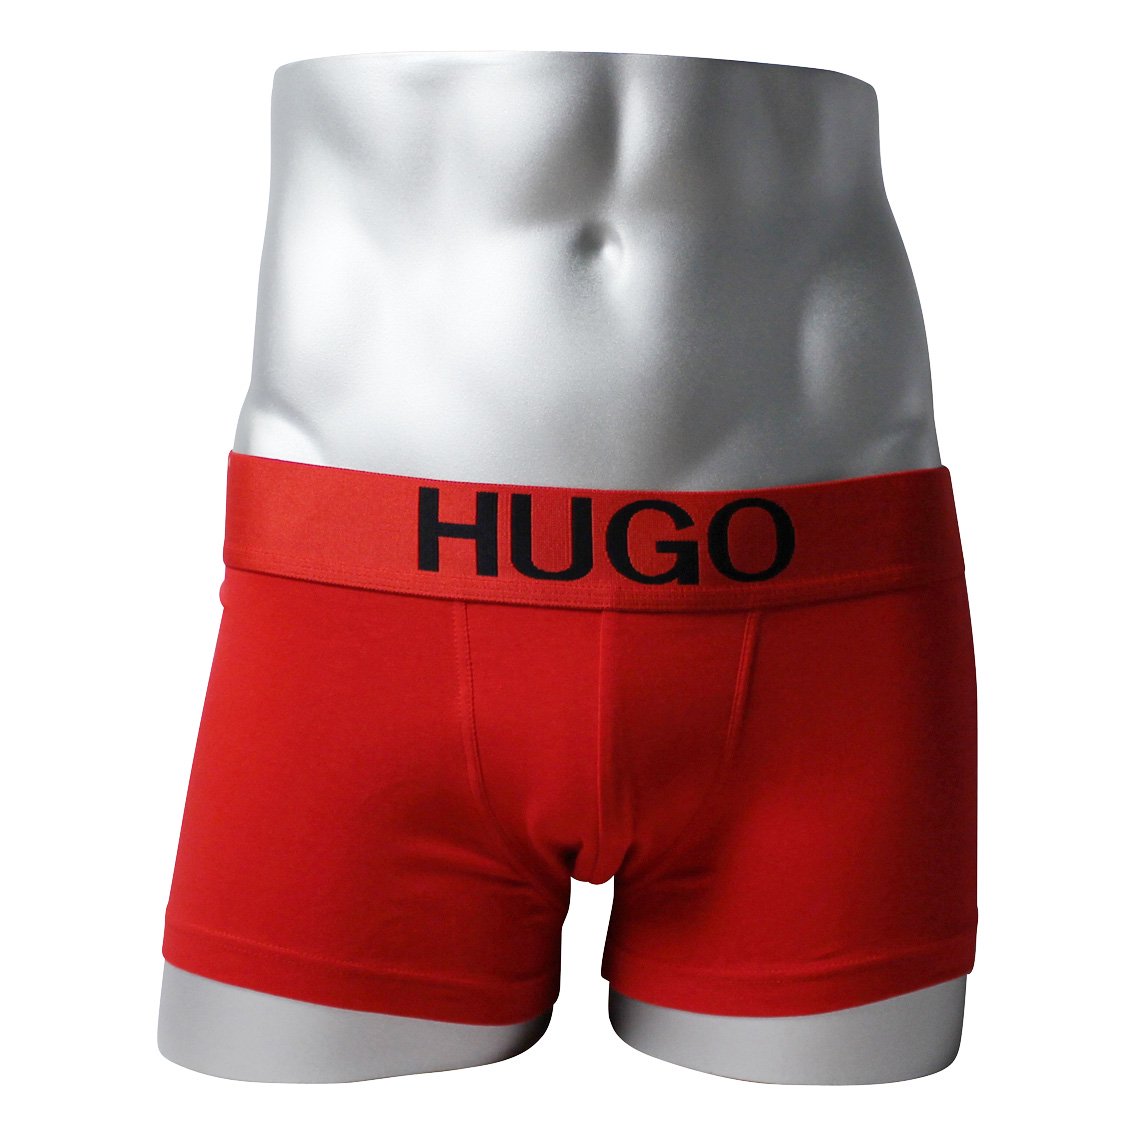 HUGO BOSS(ヒューゴ・ボス)[50428876-693]:ボクサーパンツ,男性下着,インナーの通販